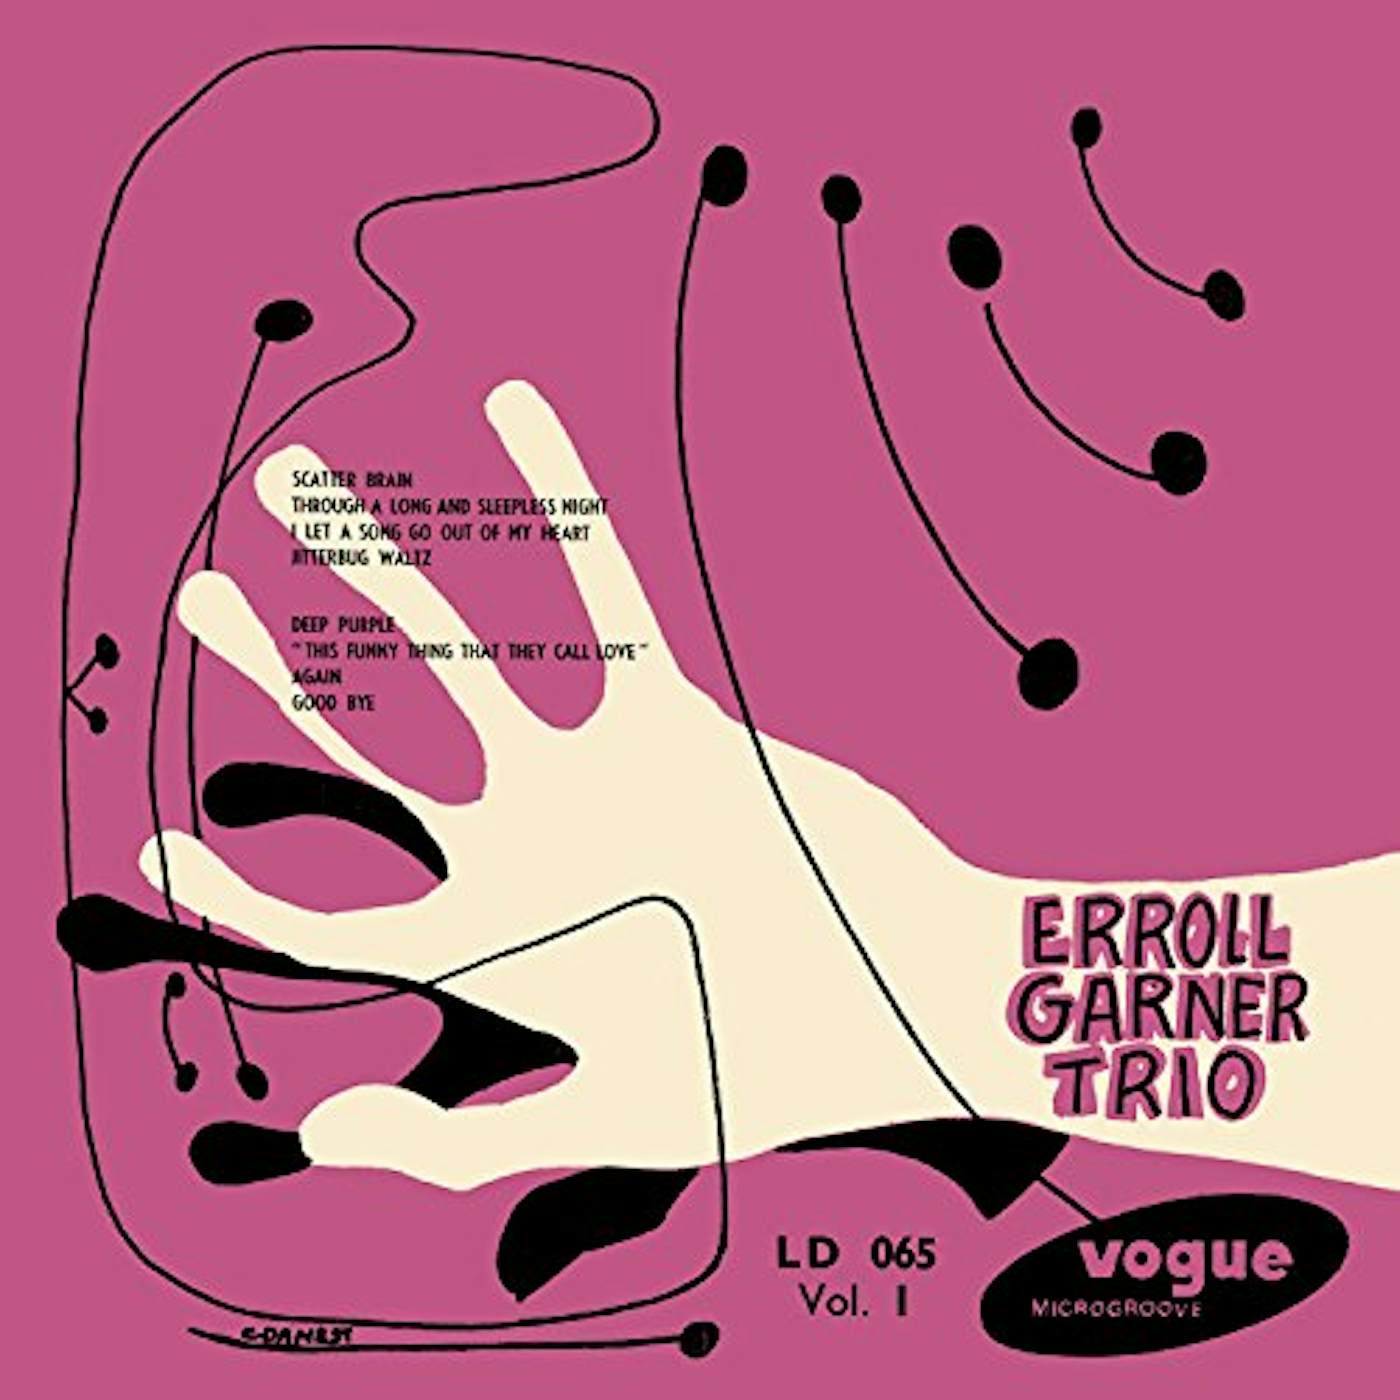 Erroll Garner Trio VOL 1 Vinyl Record